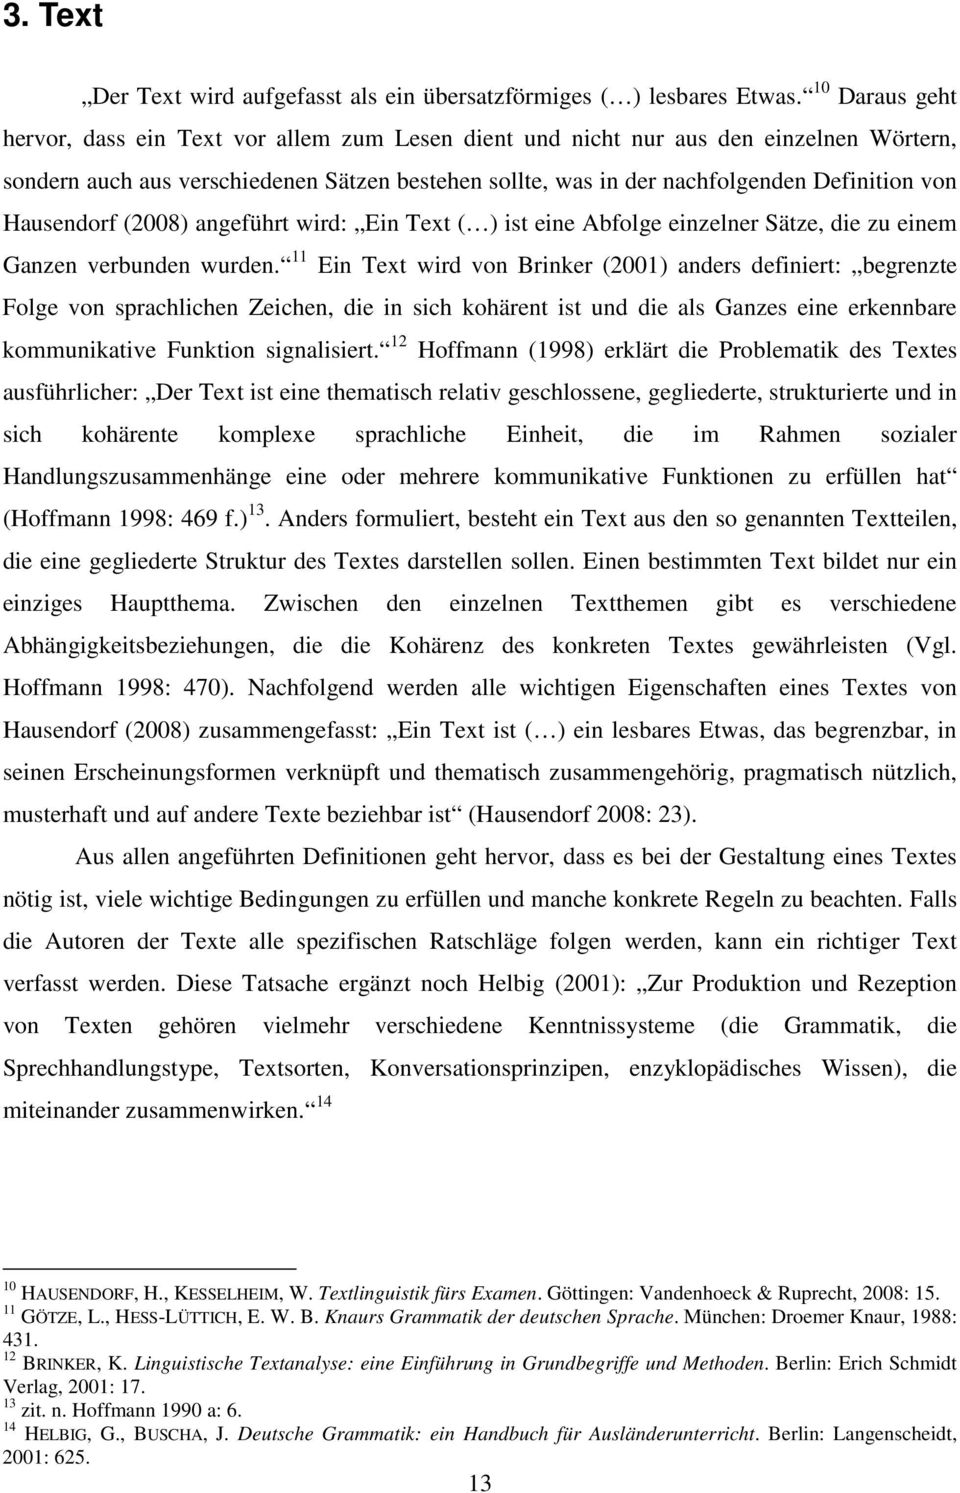 Hausendorf (2008) angeführt wird: Ein Text ( ) ist eine Abfolge einzelner Sätze, die zu einem Ganzen verbunden wurden.